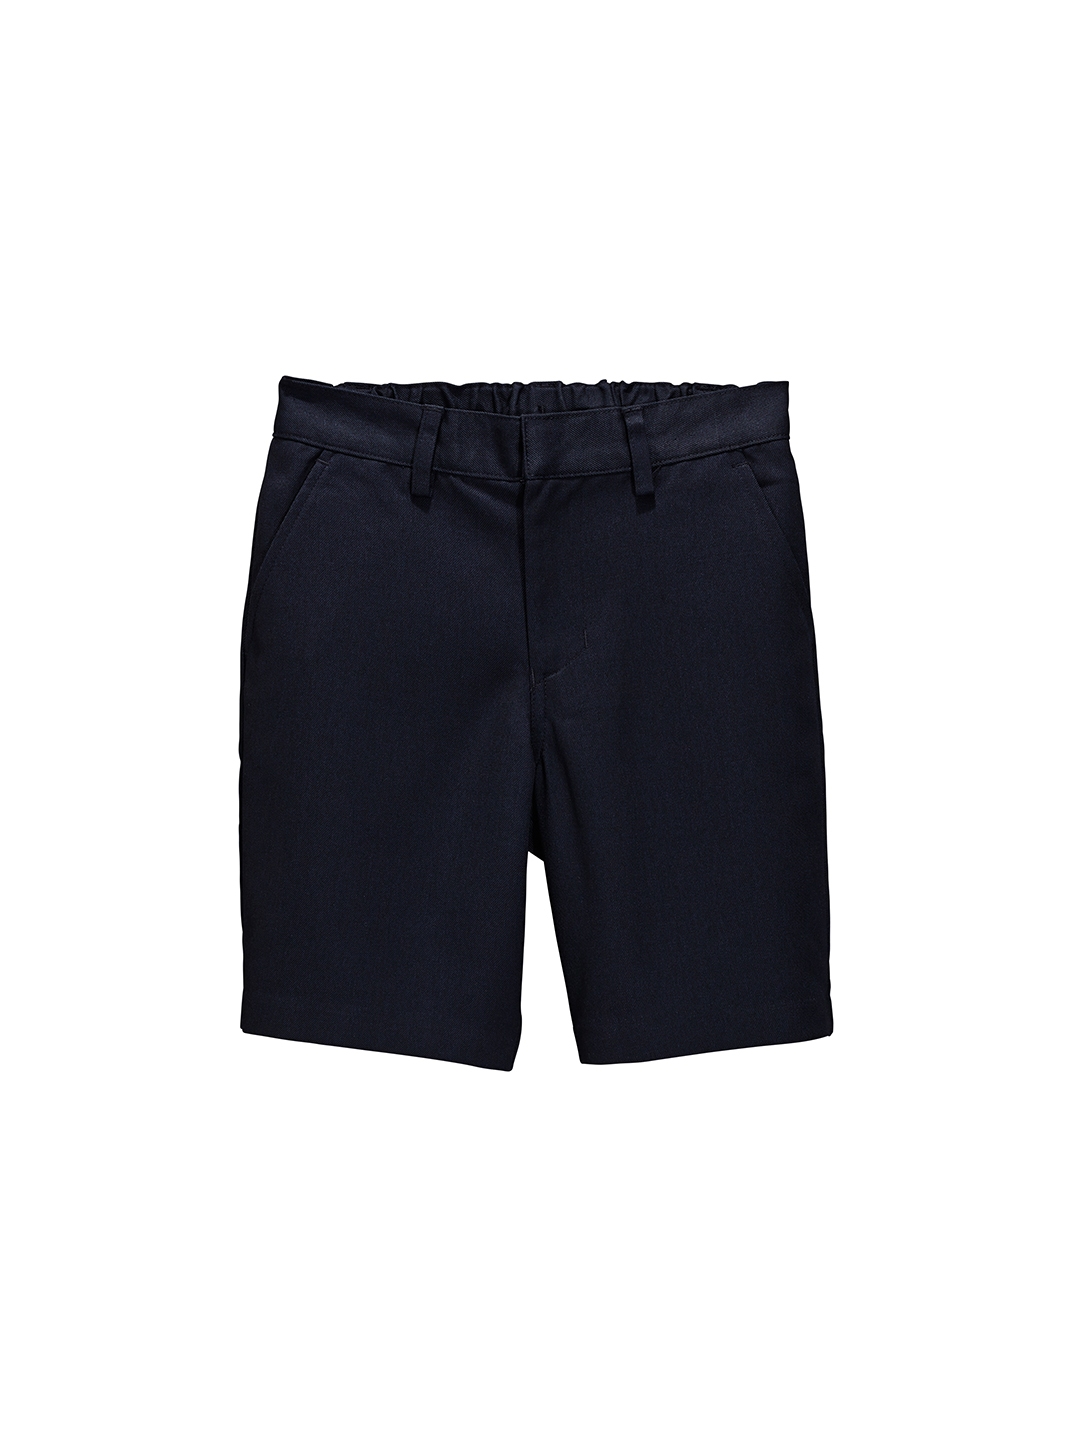 Buy NEXT Boys Navy Blue Solid Regular Fit Regular Shorts - Shorts for ...